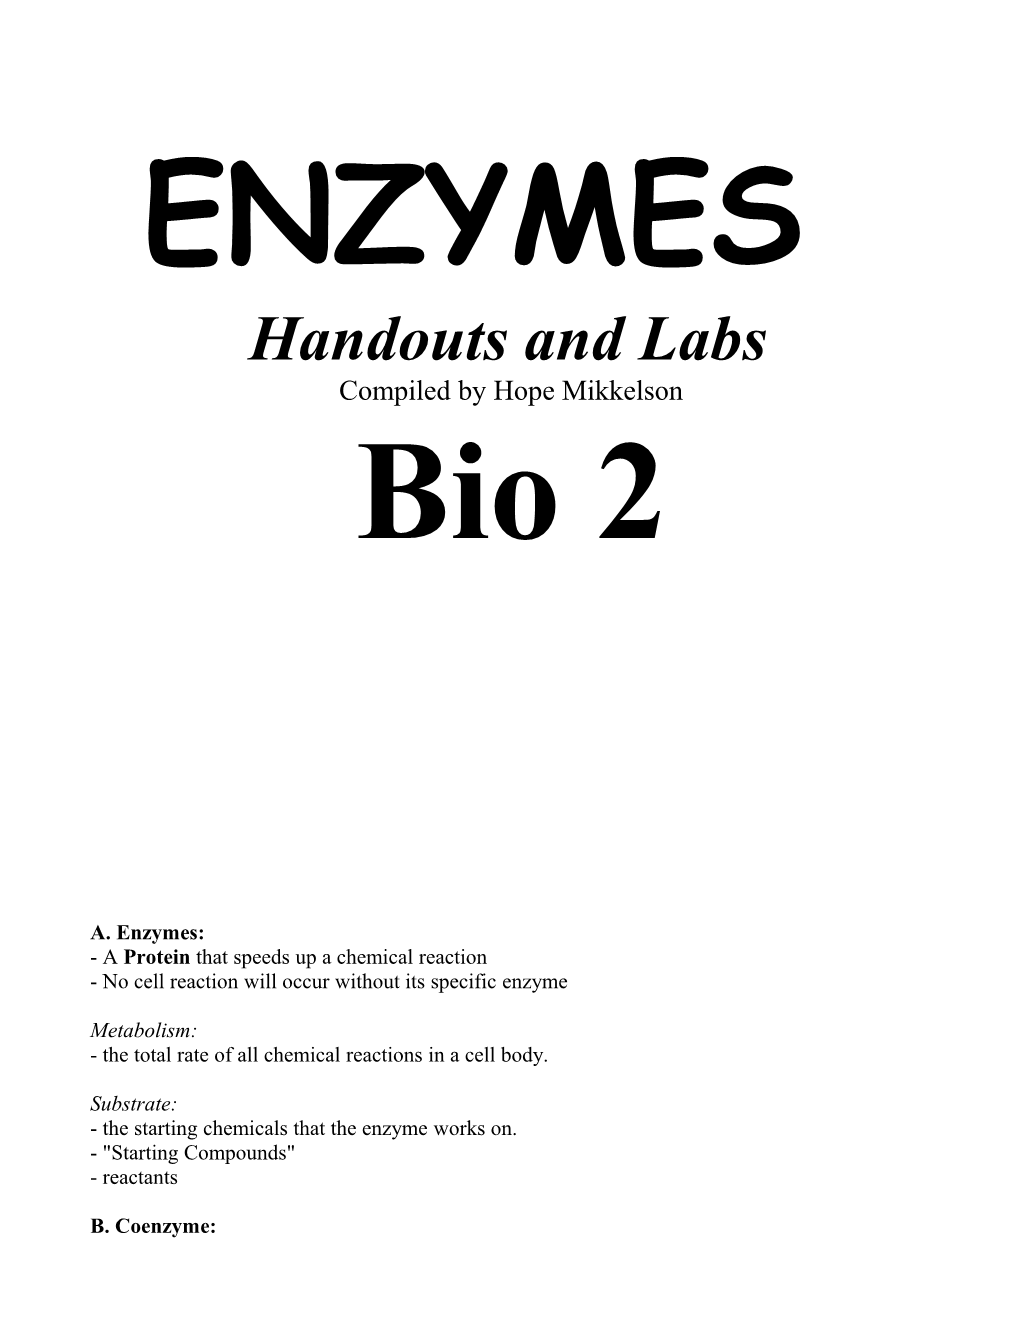 Bio II Enzymes